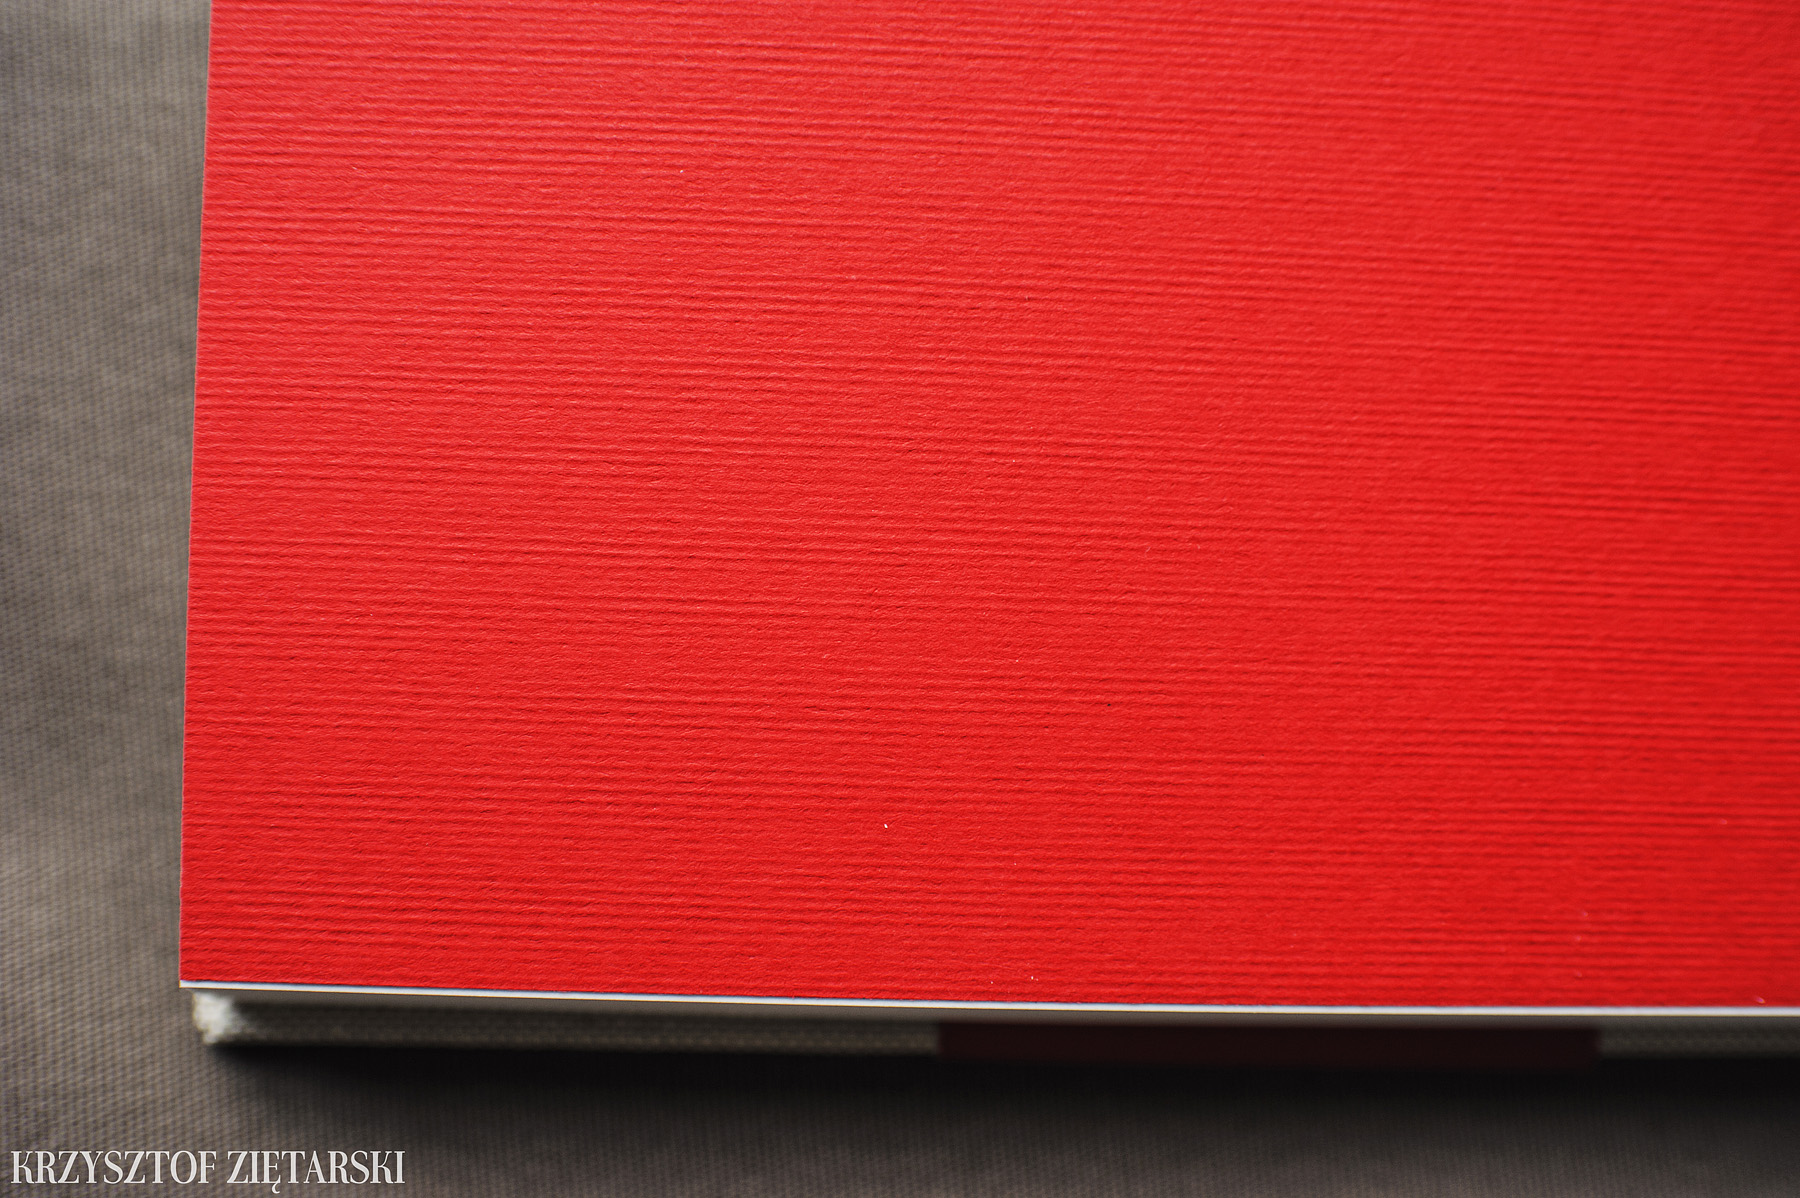 2szt. KrukBooków 30x20cm, 120 stron na papierze niepowlekanym 150g/m2 w neutralnym wariancie ( dostępny jest też lekko kremowy ), płótno lniane surowe C11, wyklejka prążkowana w czerwonym kolorze 005, i czerwona paskowa obwoluta.